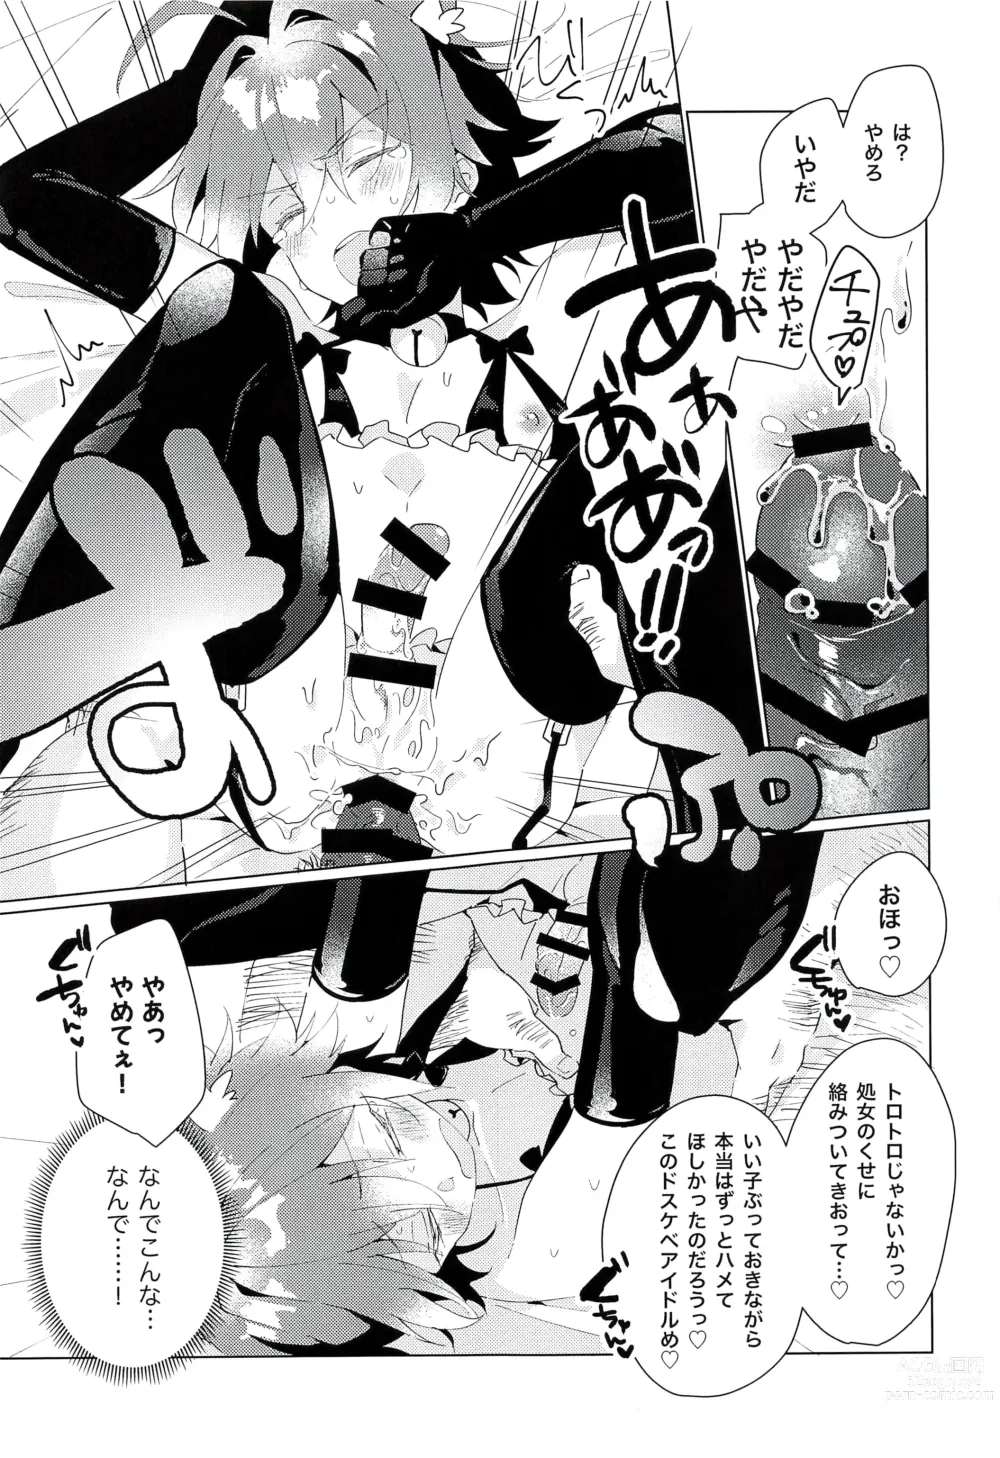 Page 23 of doujinshi naive.